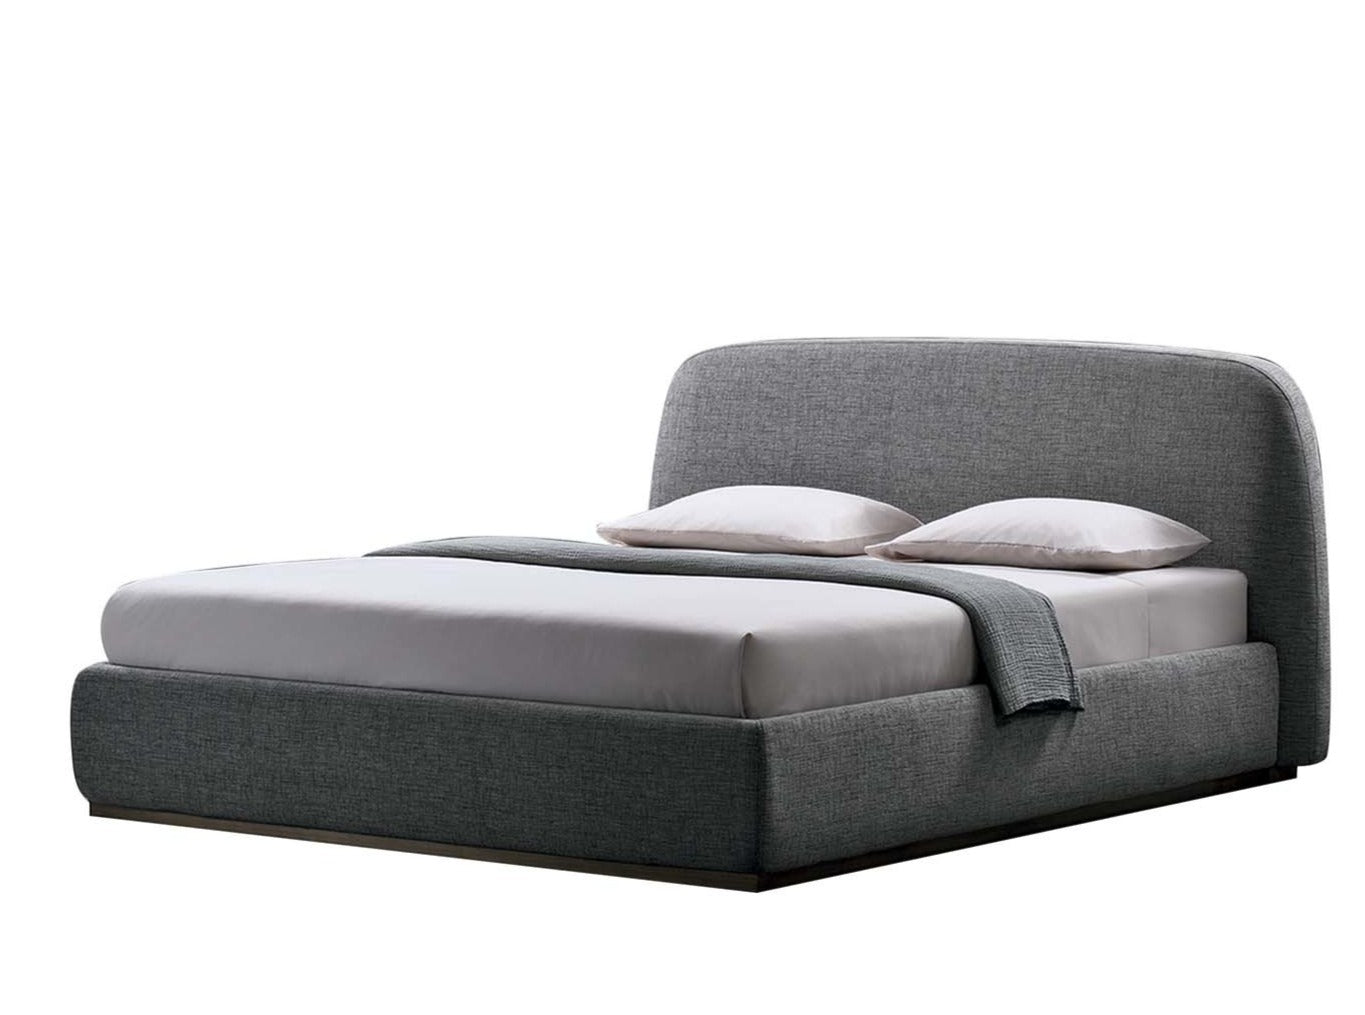 Sophie Designer Upholstered Bed